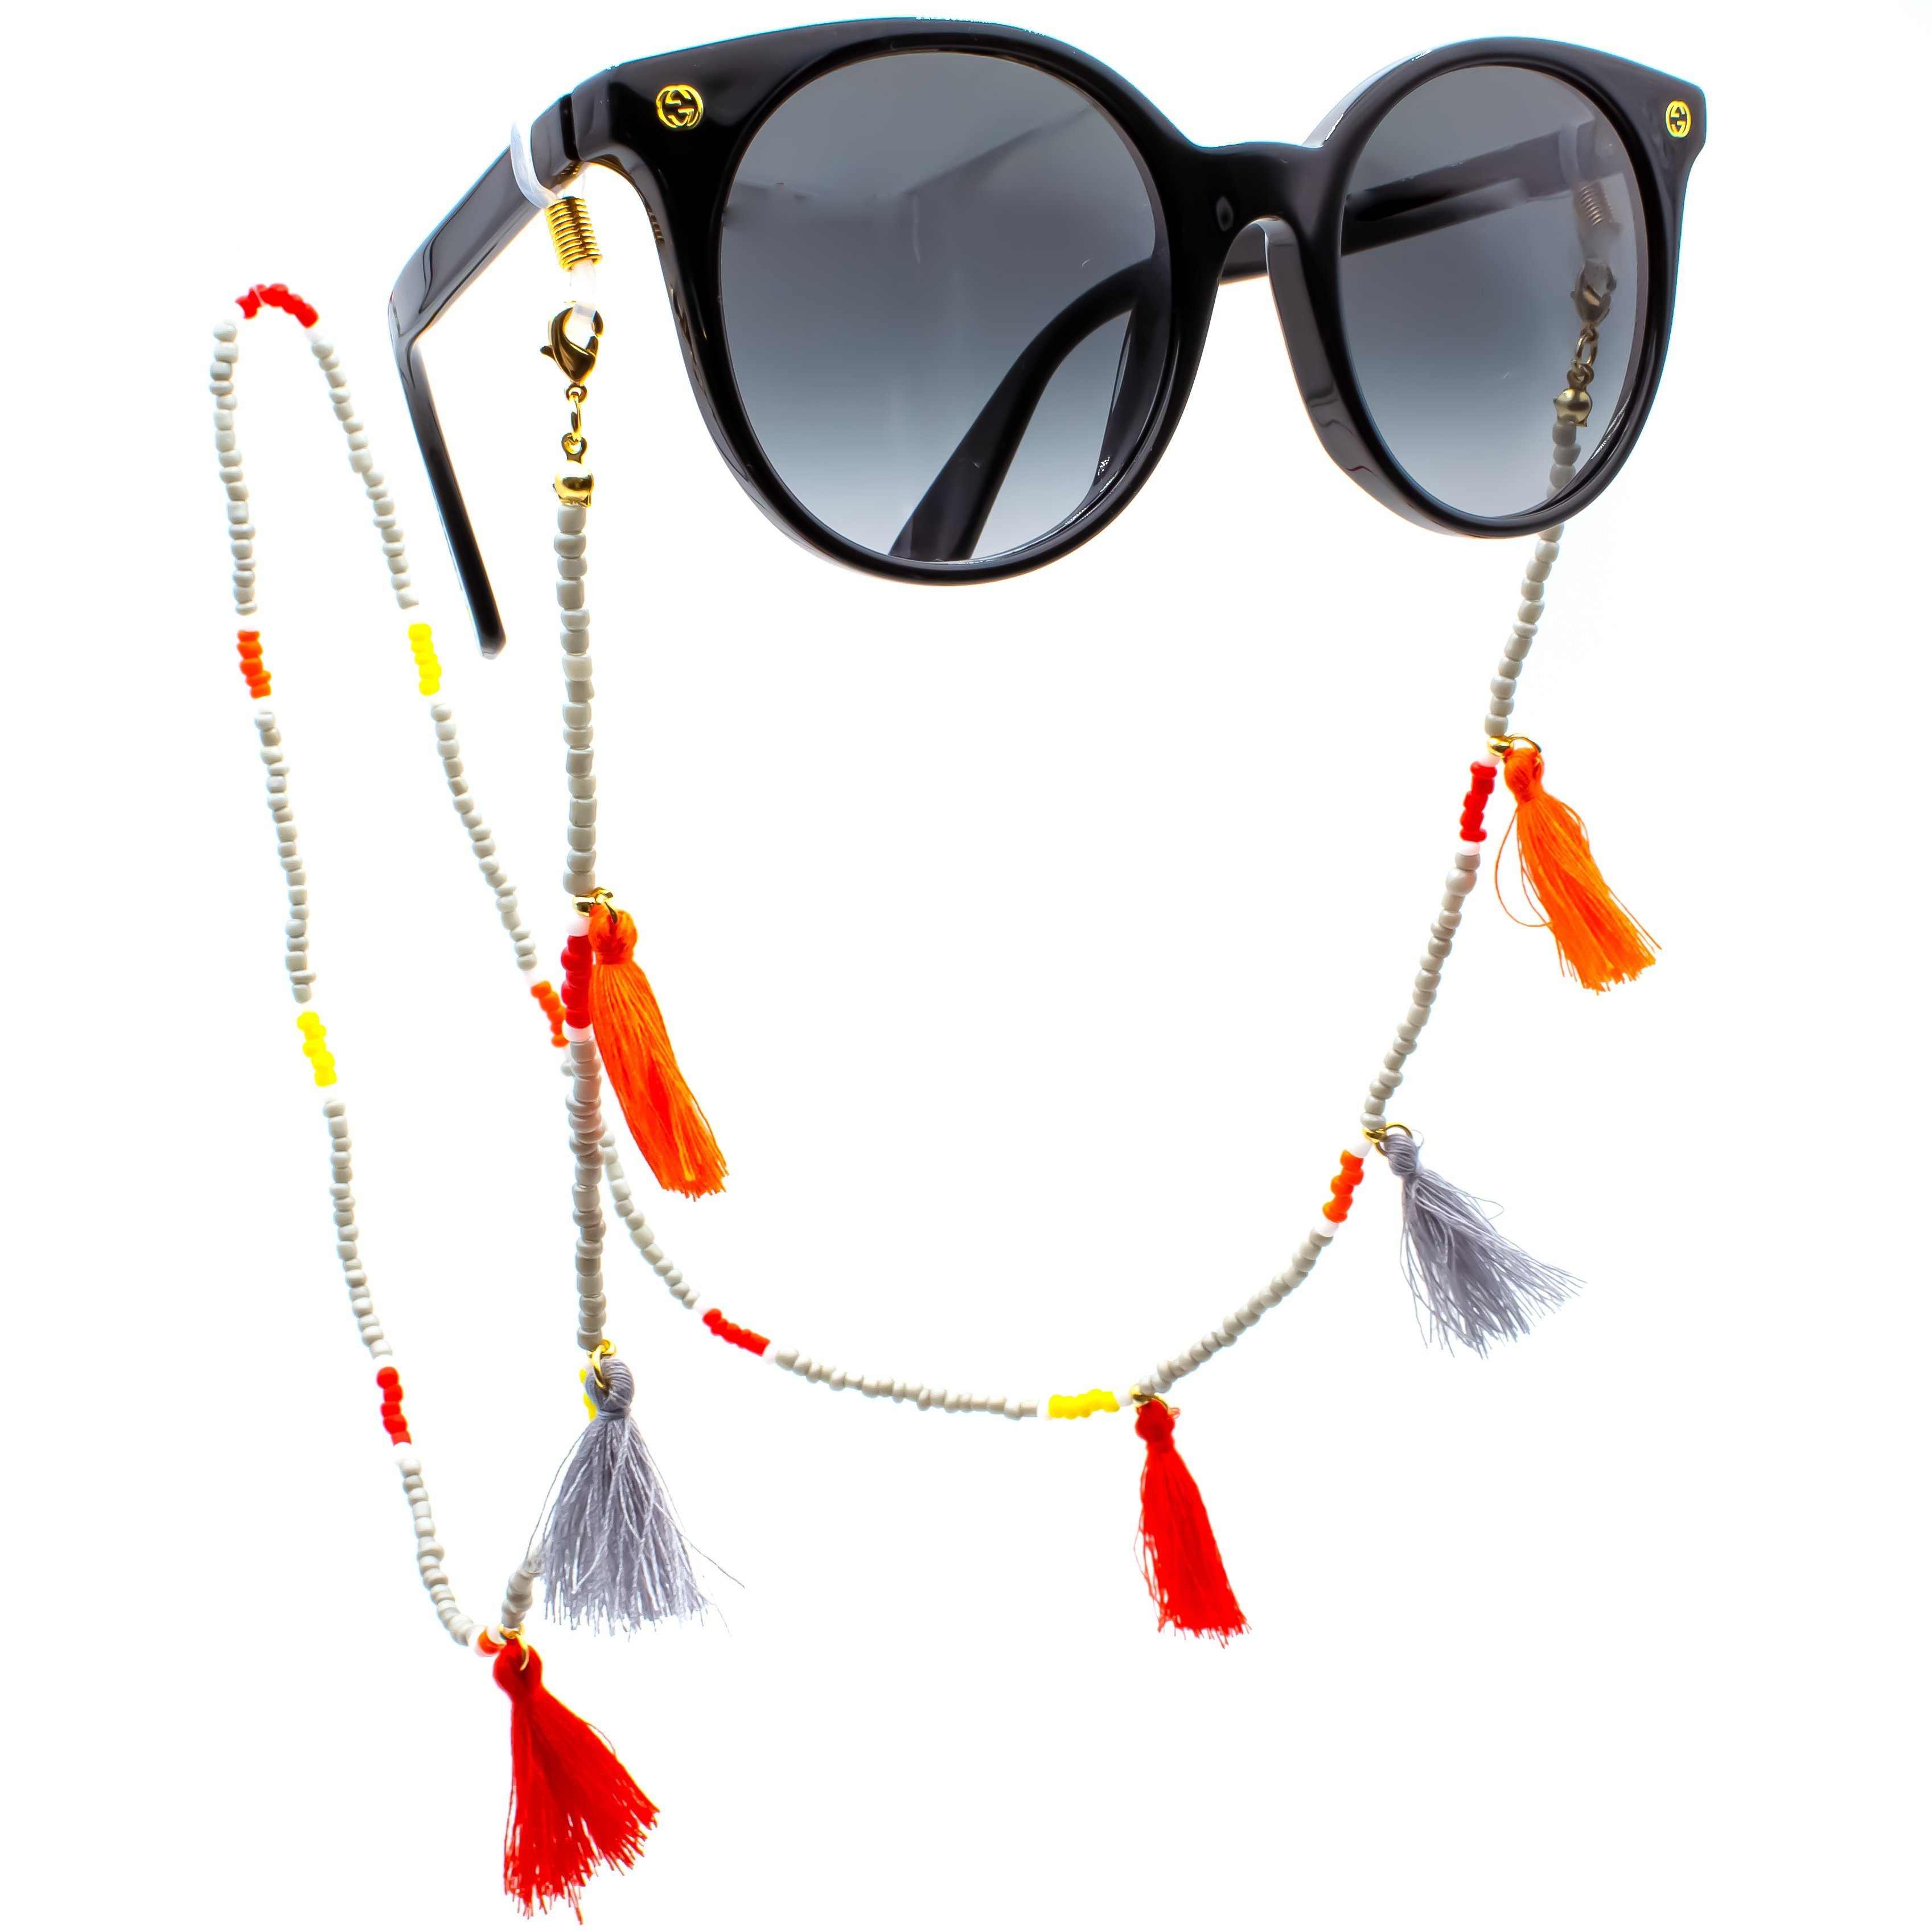 GERNEO Brillenband GERNEO® - Ibiza - Premium Brillenband & Brillenkordel Maskenhalter, Lesebrille & Sonnenbrille - Perlenkette mit bunten Perlen und Pusteln grau-gold